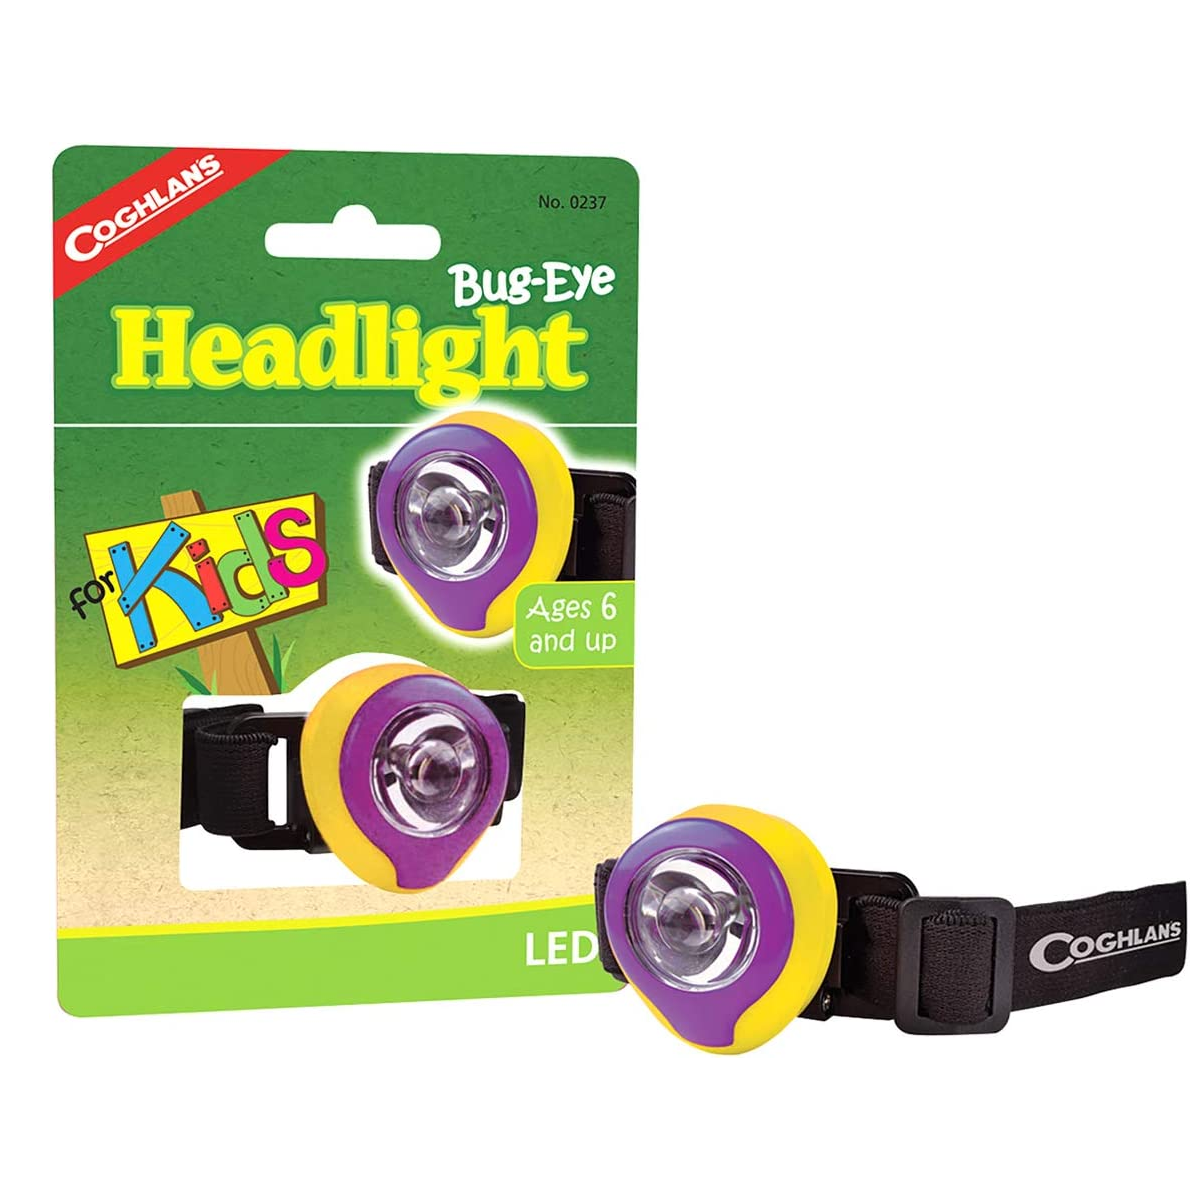 Coghlans Bug Eye Headlight For Kids